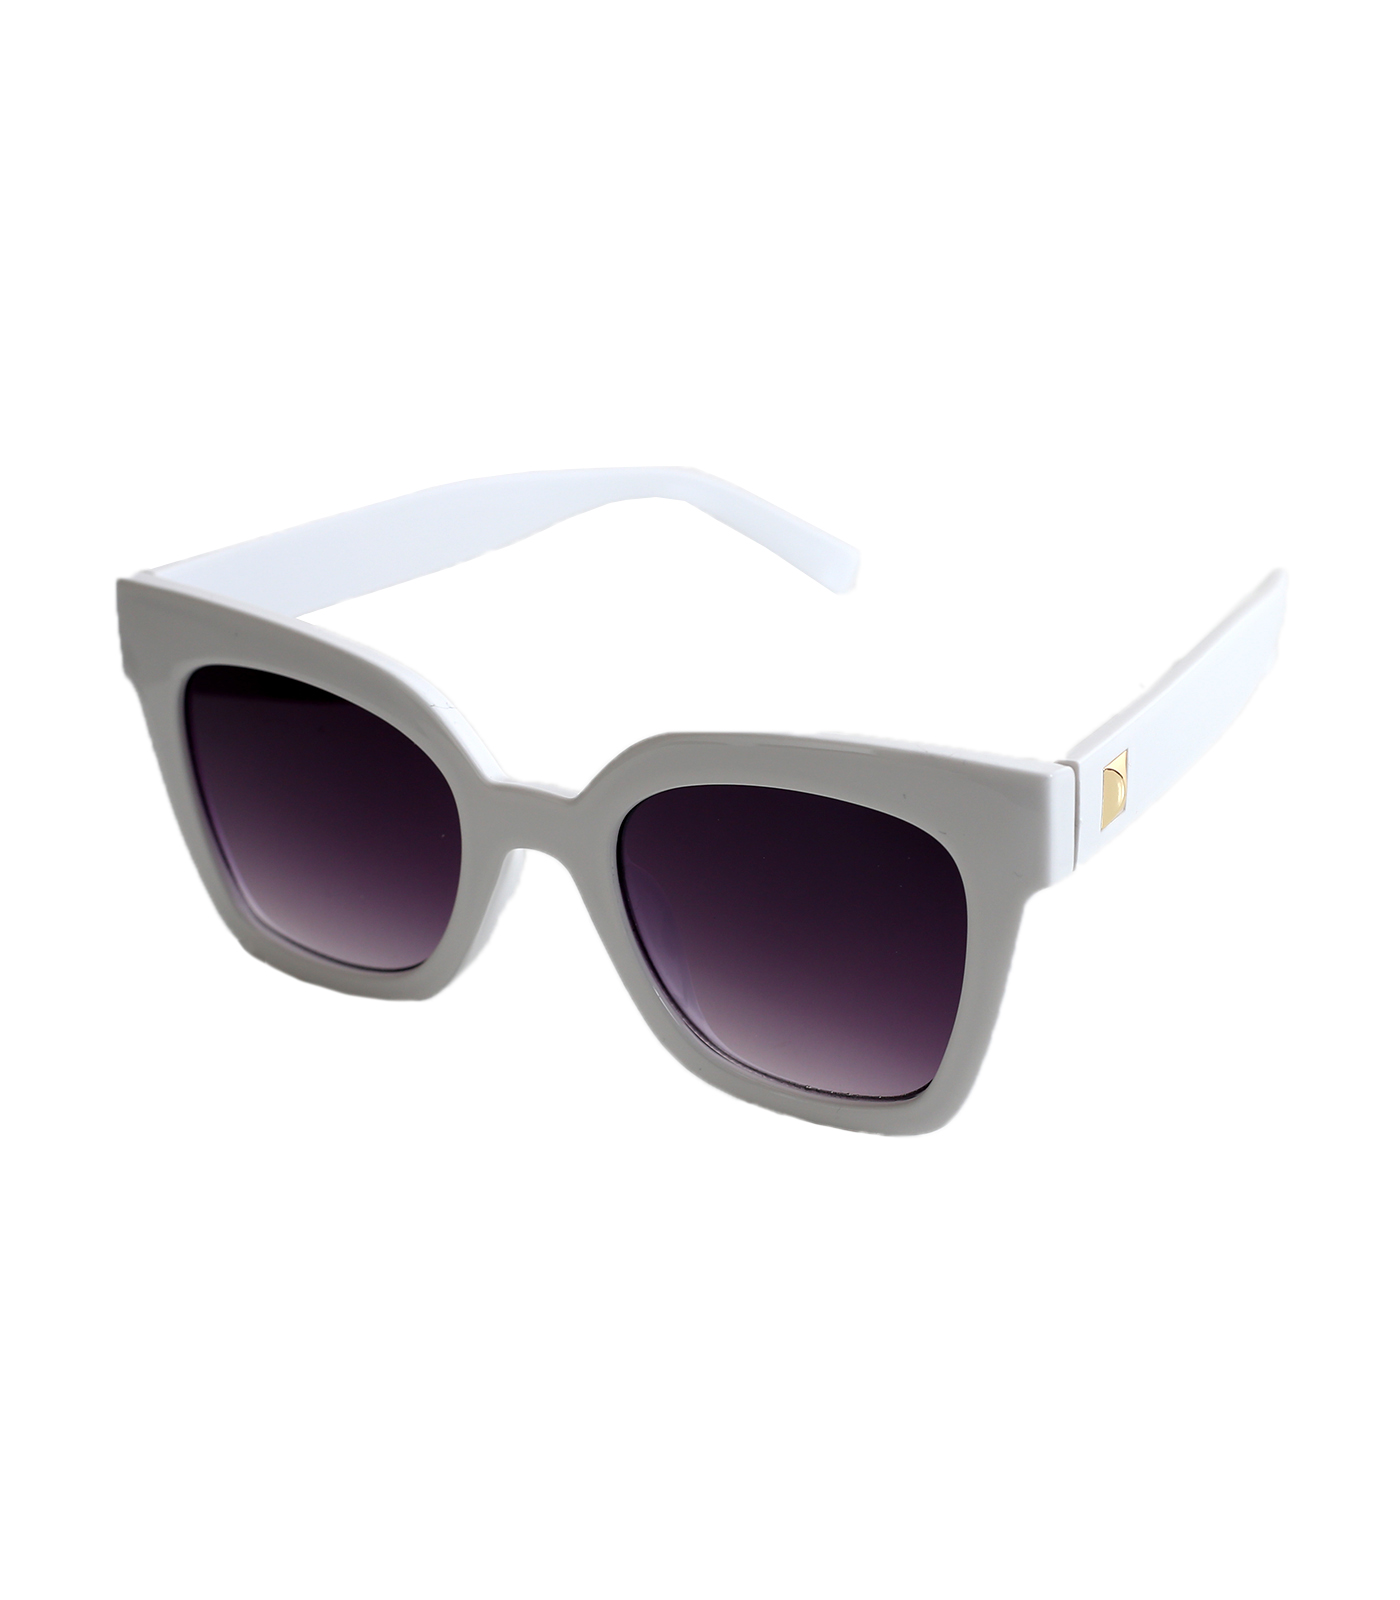 Ορθογώνια γυαλιά ηλίου κοκάλινα (Μπεζ) 5621